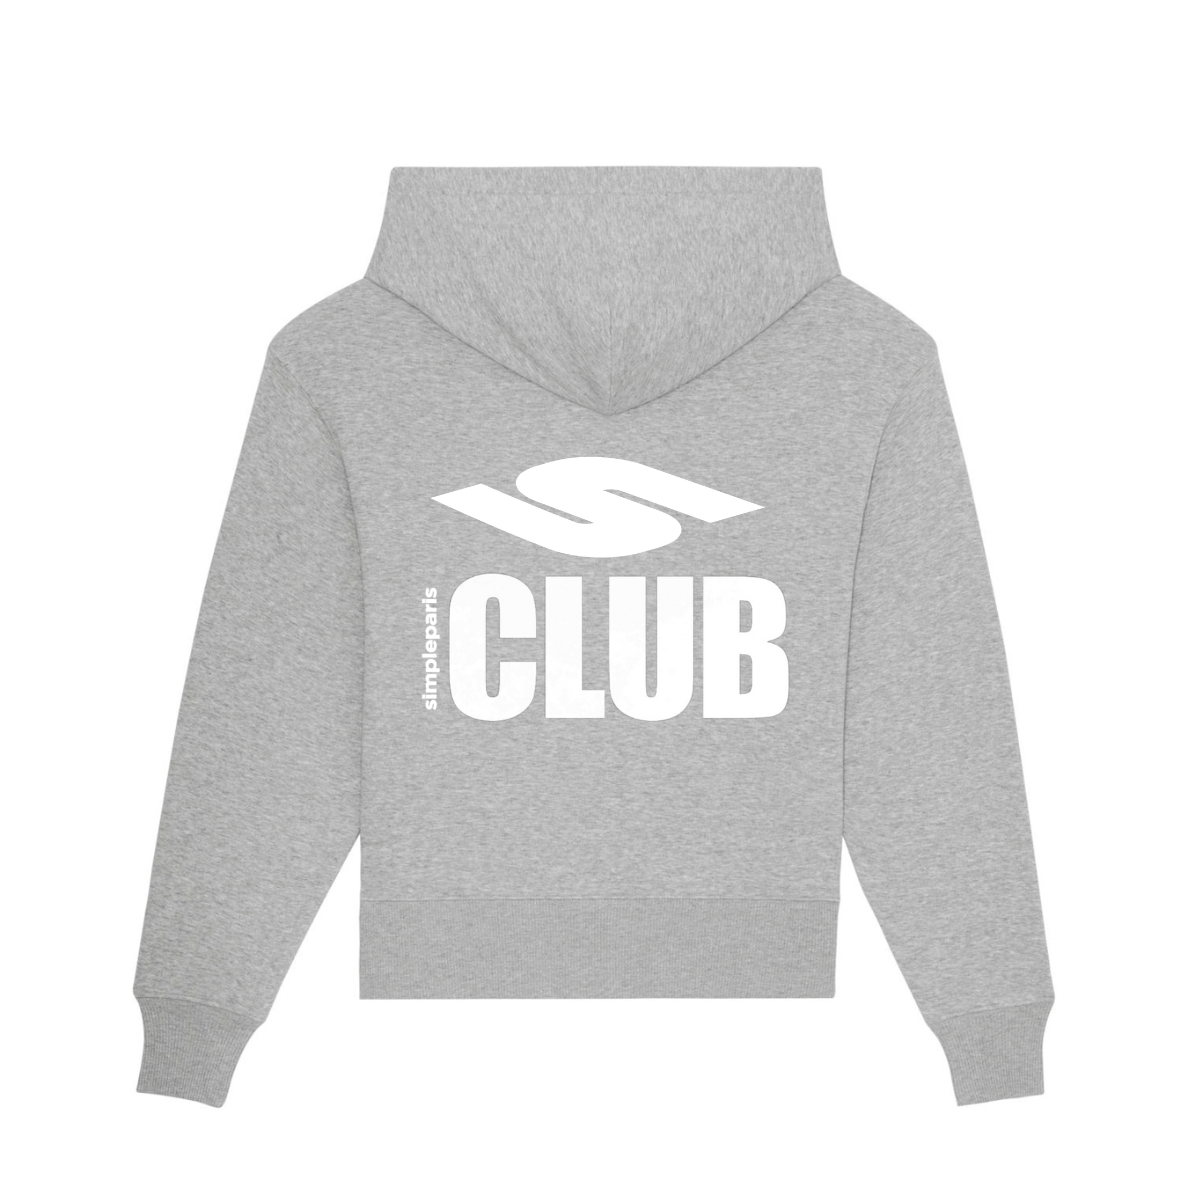 CLUB (sweat)